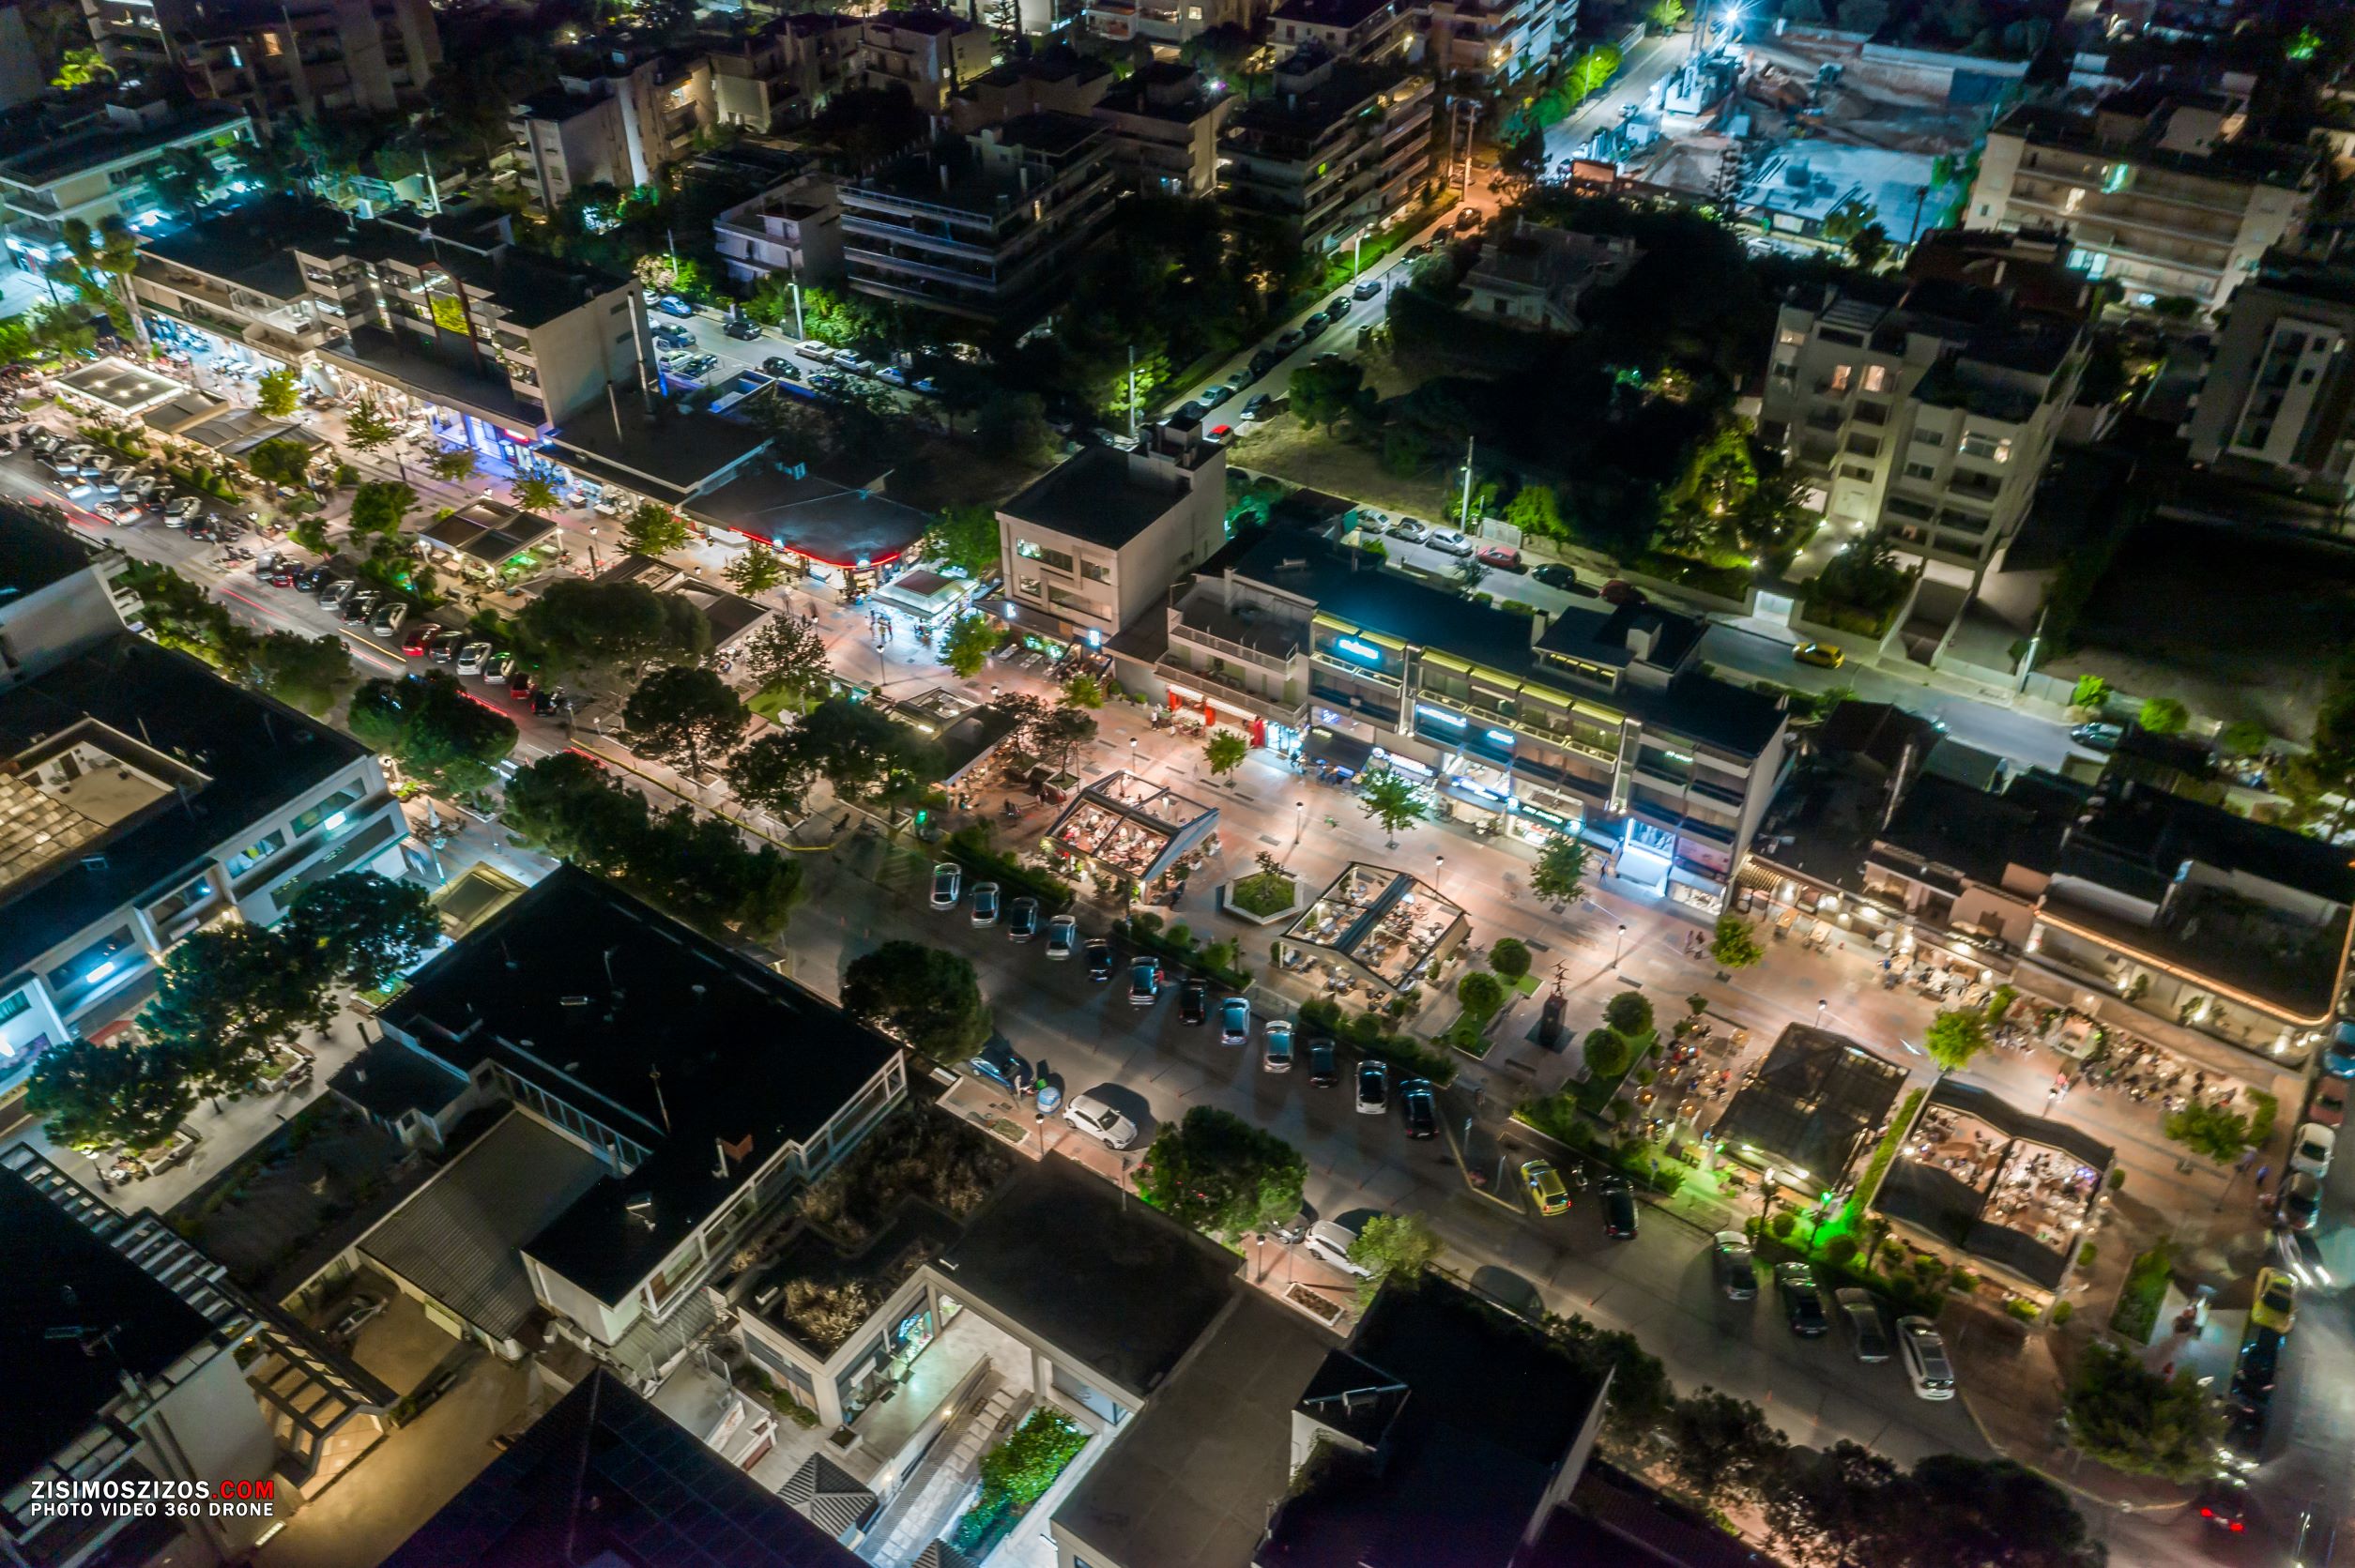 Δήμος 3Β: Χαμηλώνει τα φώτα στους δρόμους για εξοικονόμιση ενέργειας